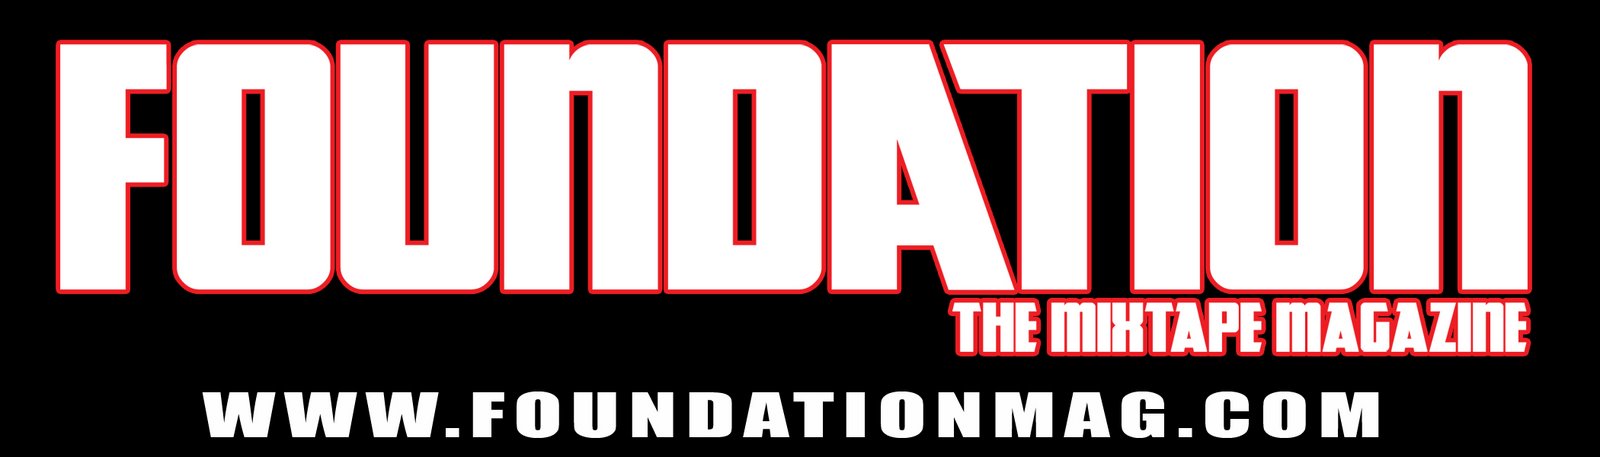 Foundation Magazine (Logo)